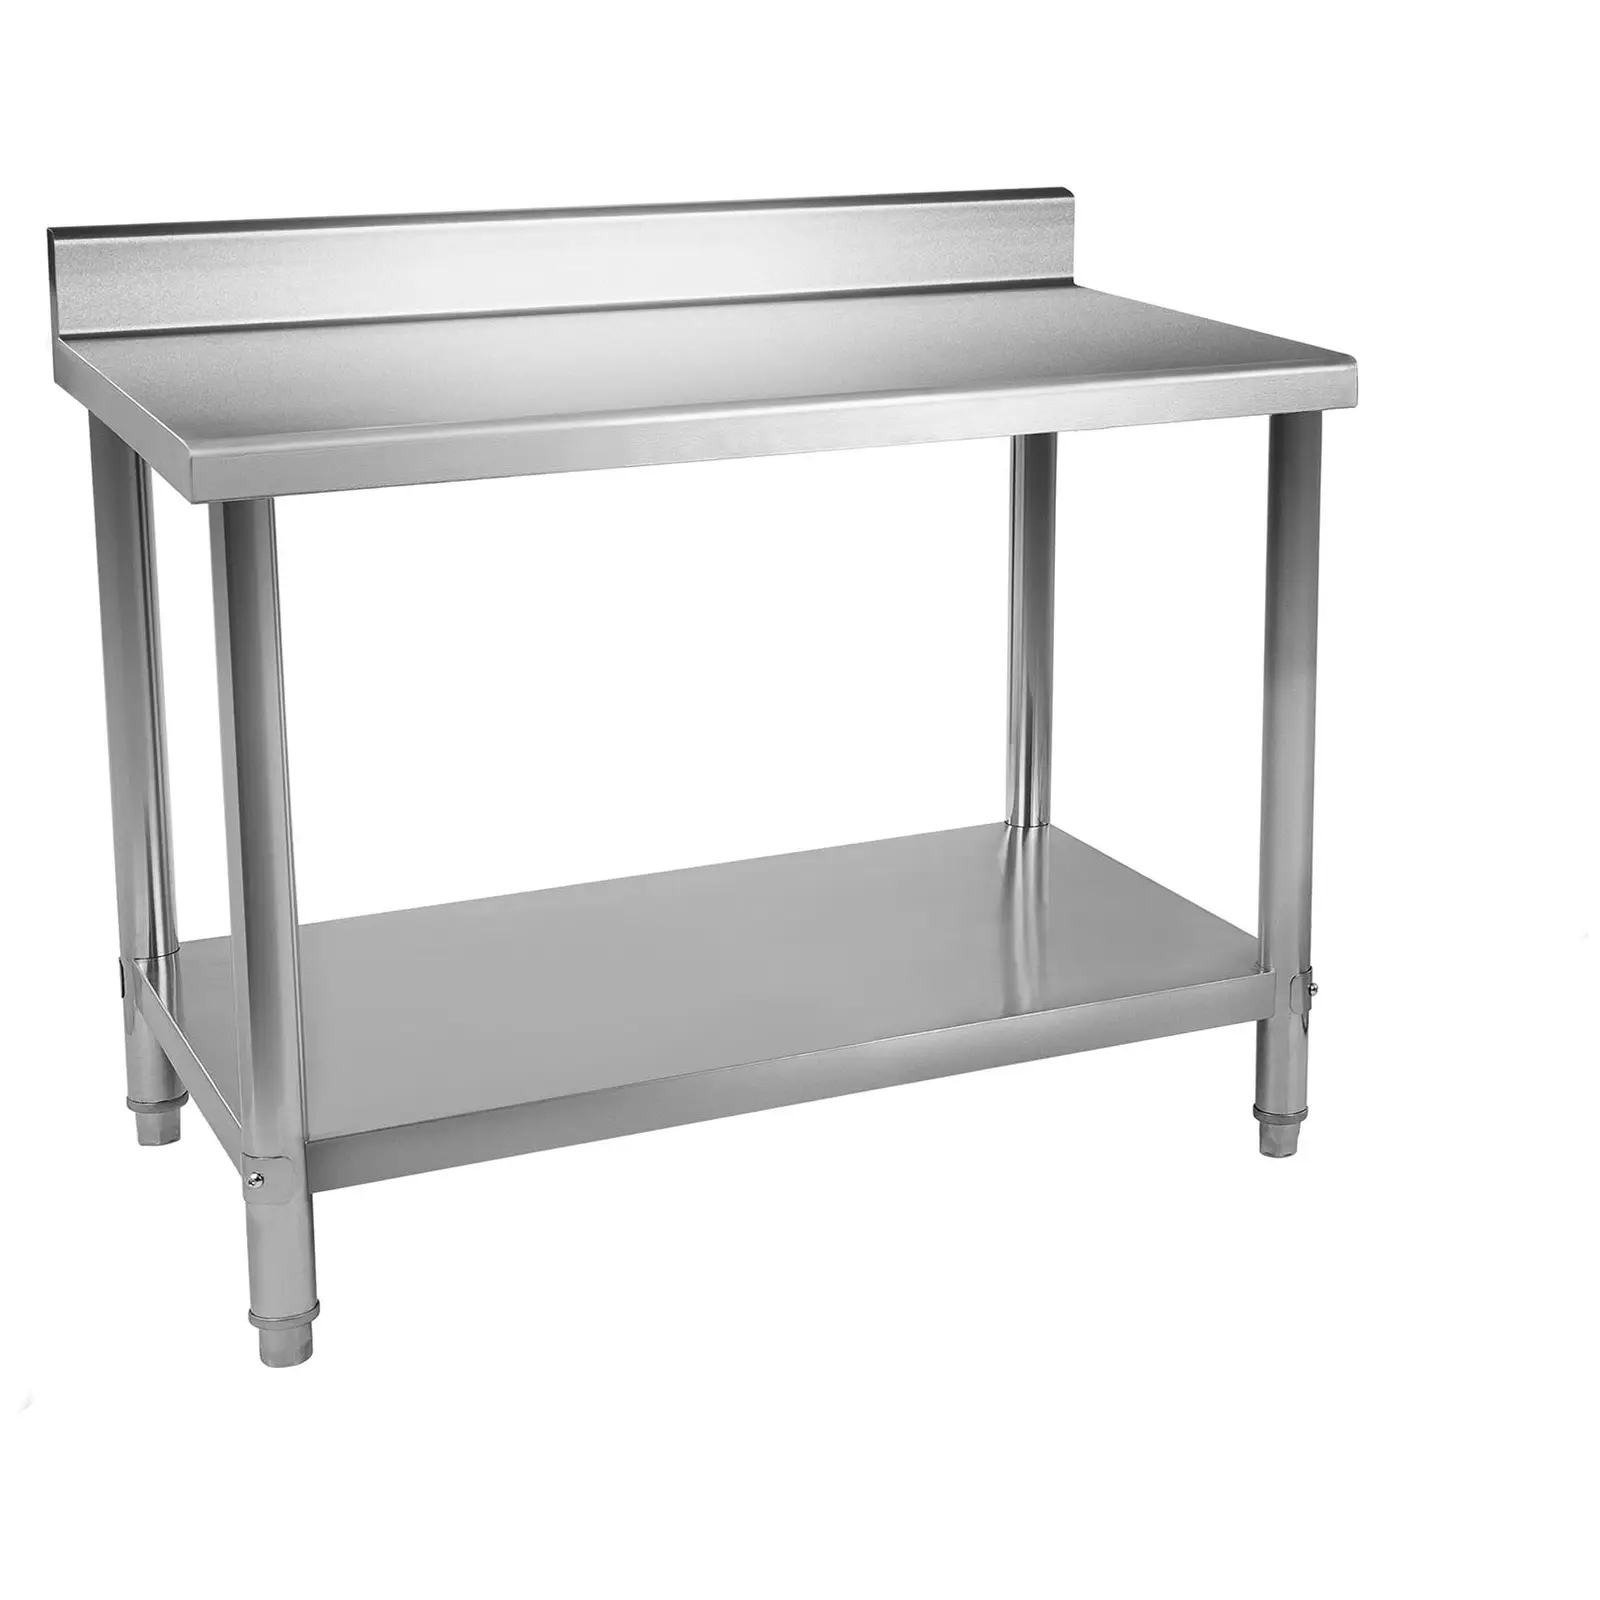 Nerezový pracovní stůl - 120 x 70 cm - s lemy - 143 kg